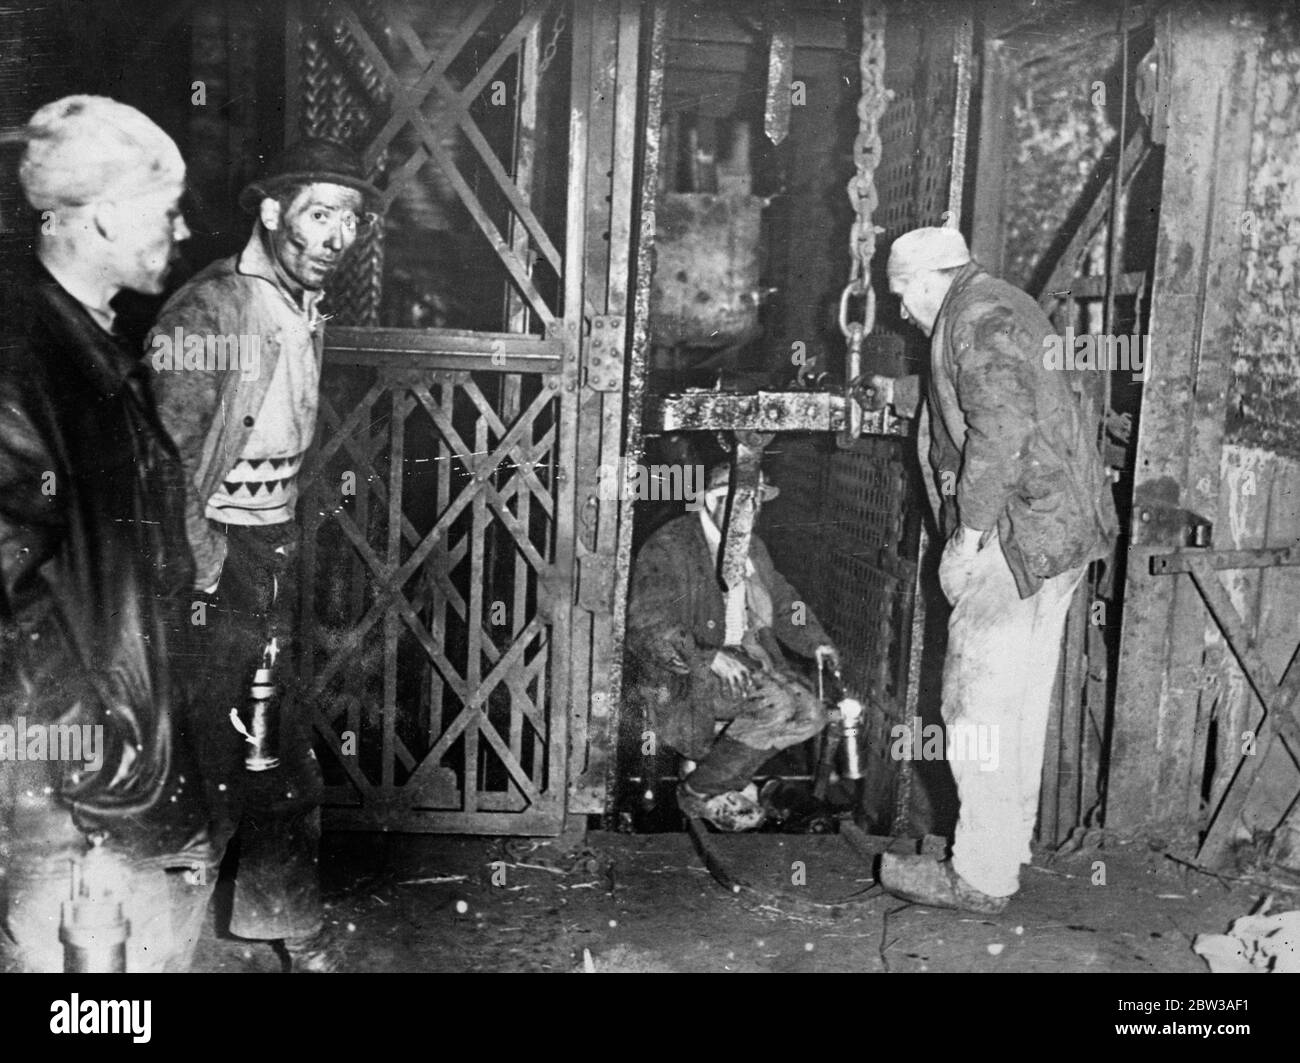 43 péris dans la catastrophe de la mine belge . Quarante-trois hommes se sont emmêtés lorsqu'une explosion désastreuse s'est produite dans une mine de charbon près de Paturage , en Belgique . L'explosion s'est produite dans une galerie 2 , 700 pieds sous terre . Après l'accident, la mine a été scellée . Photos montrant la victime de l'explosion . 17 mai 1934 . Banque D'Images